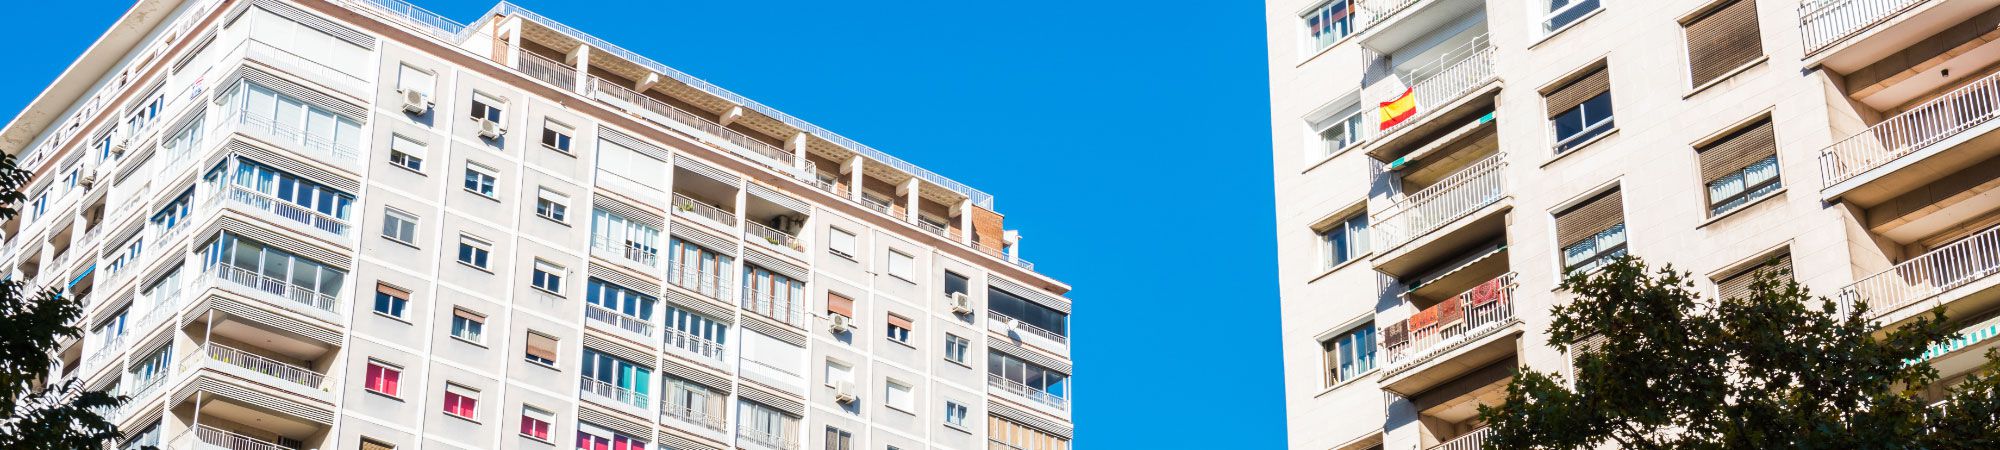 Amplia oferta de pisos, casa y locales  en venta en Almería. LOFT SERVICIOS INMOBILIARIOS S.L. en Almeria